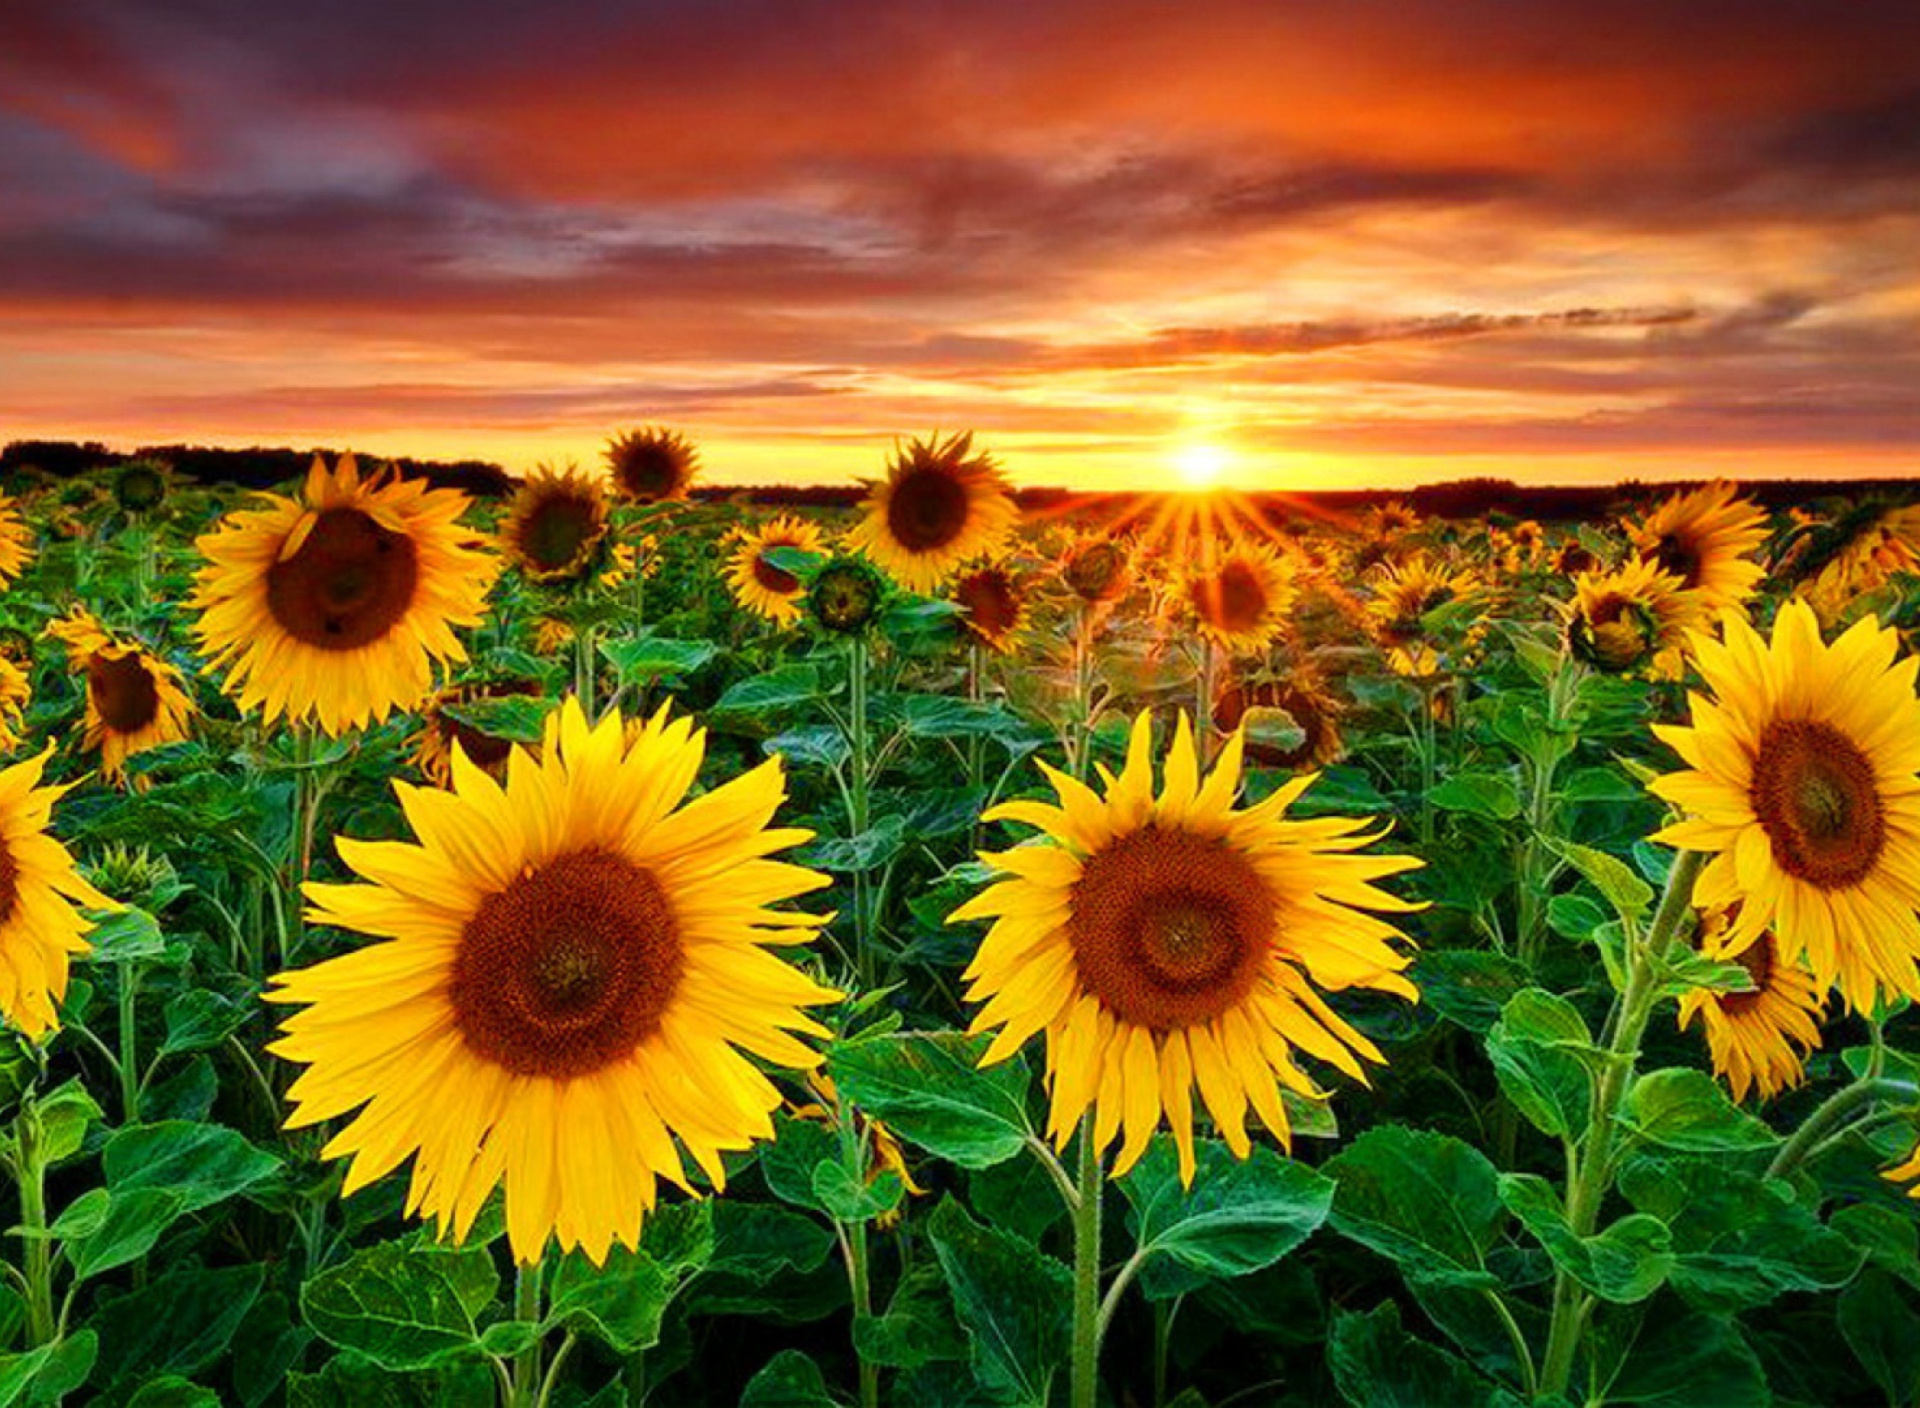 Beautiful Sunflower Field At Sunset wallpaper 1920x1408